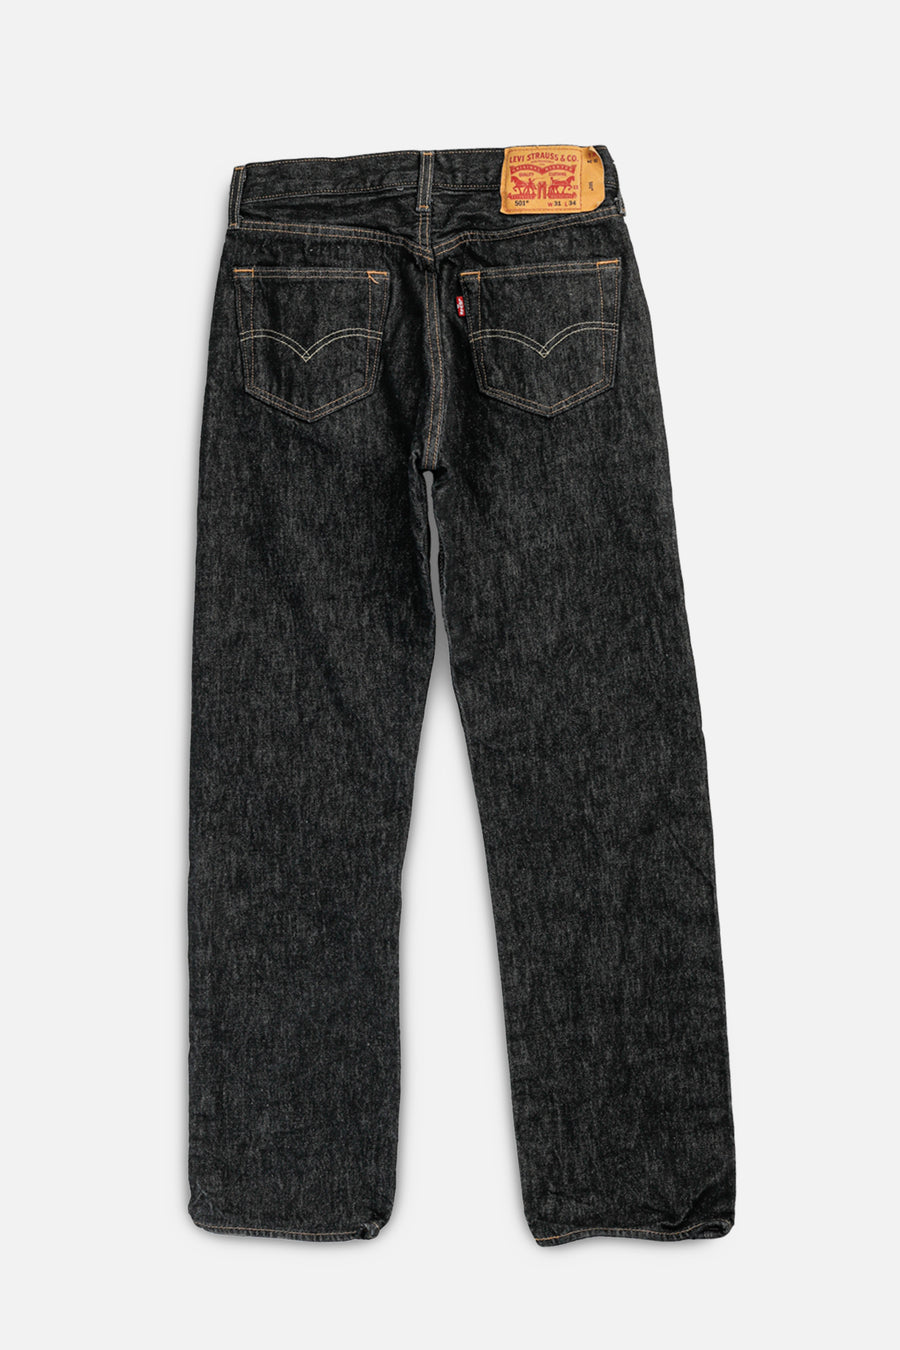 Vintage Levi's Denim Pants - W31 L34